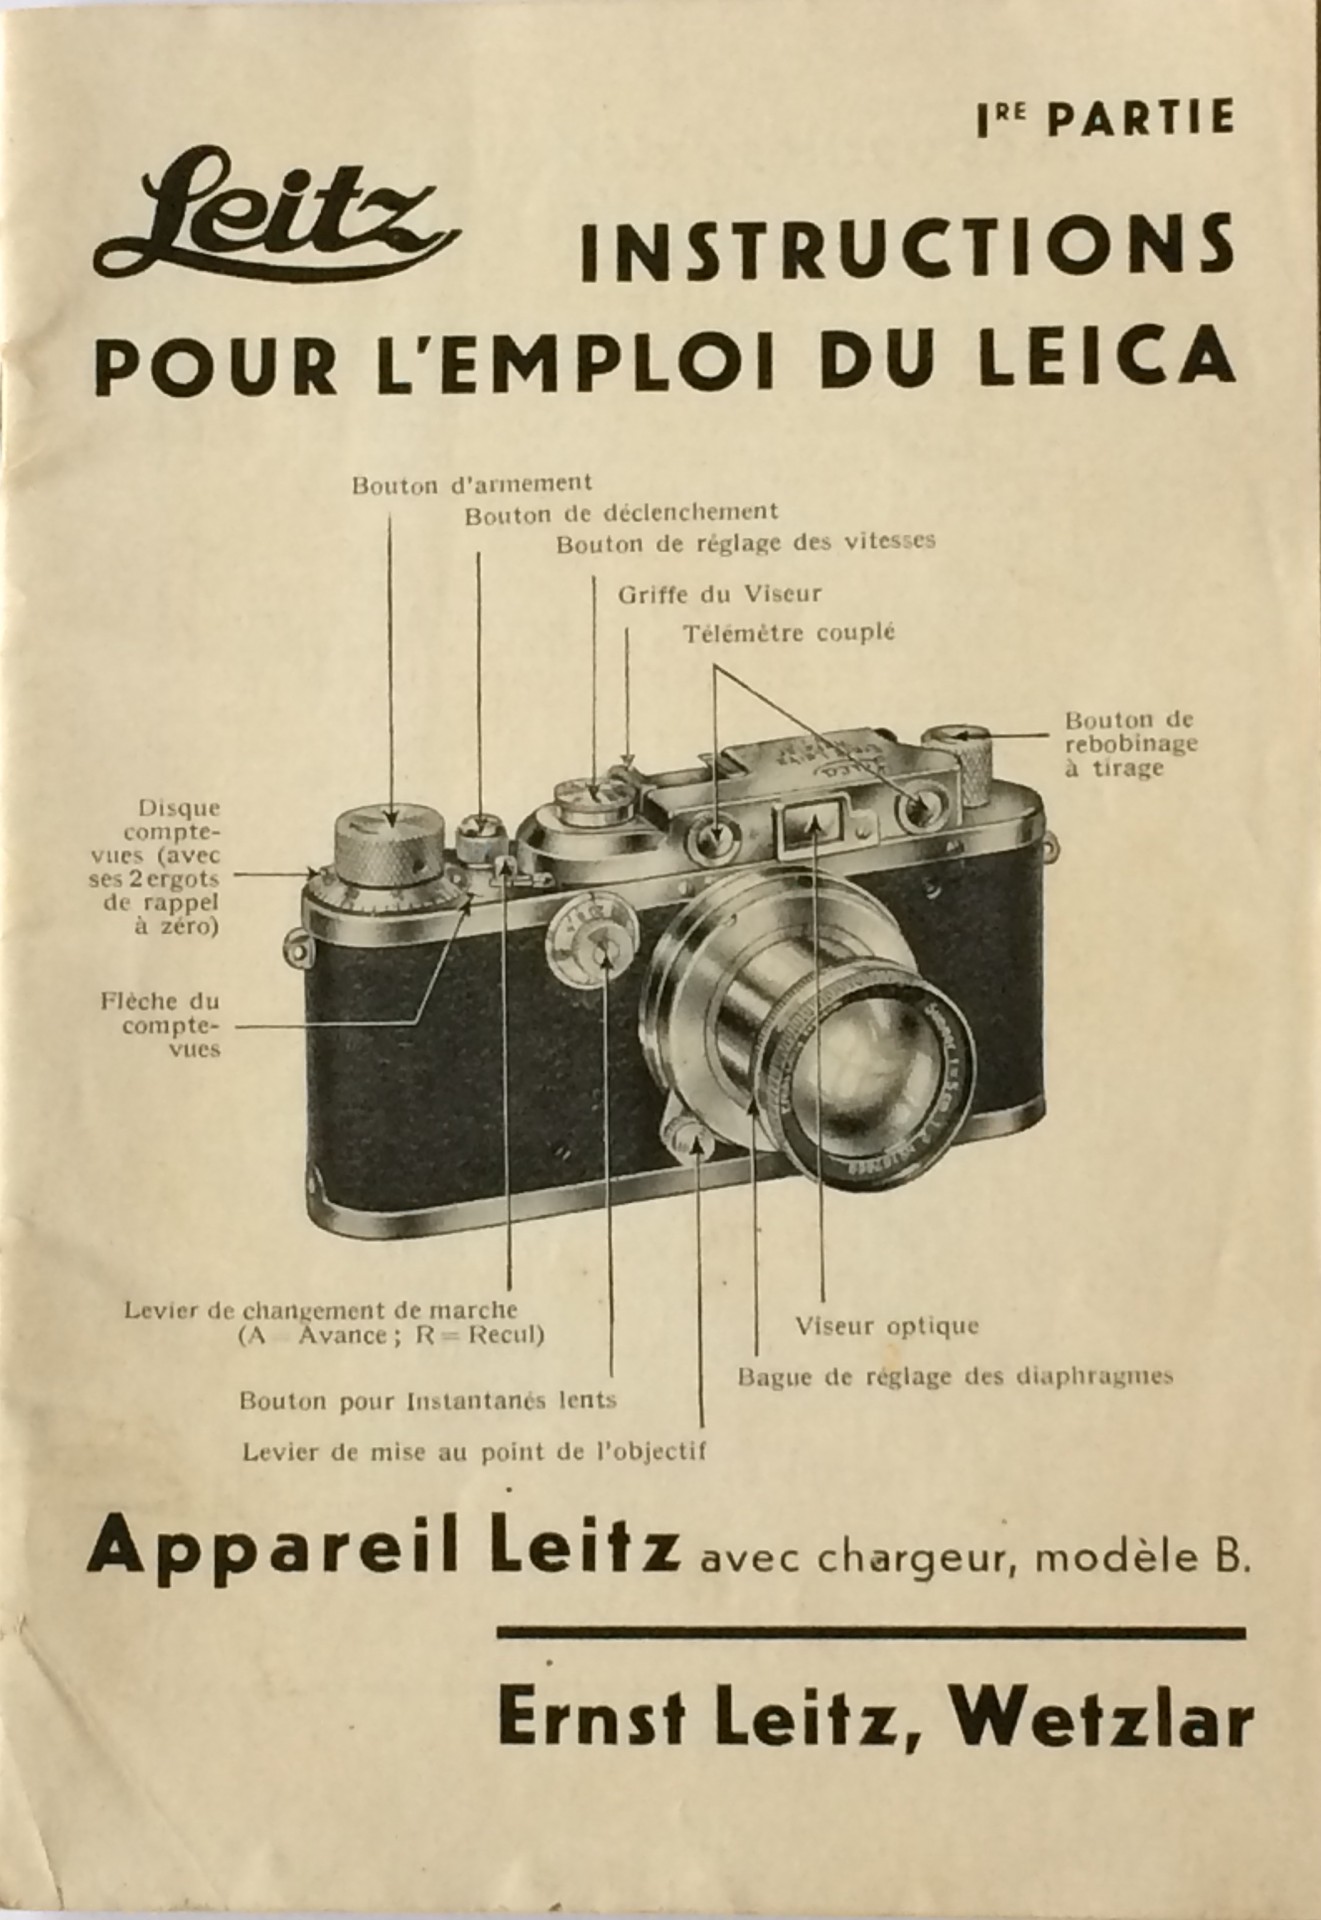 Leica llla